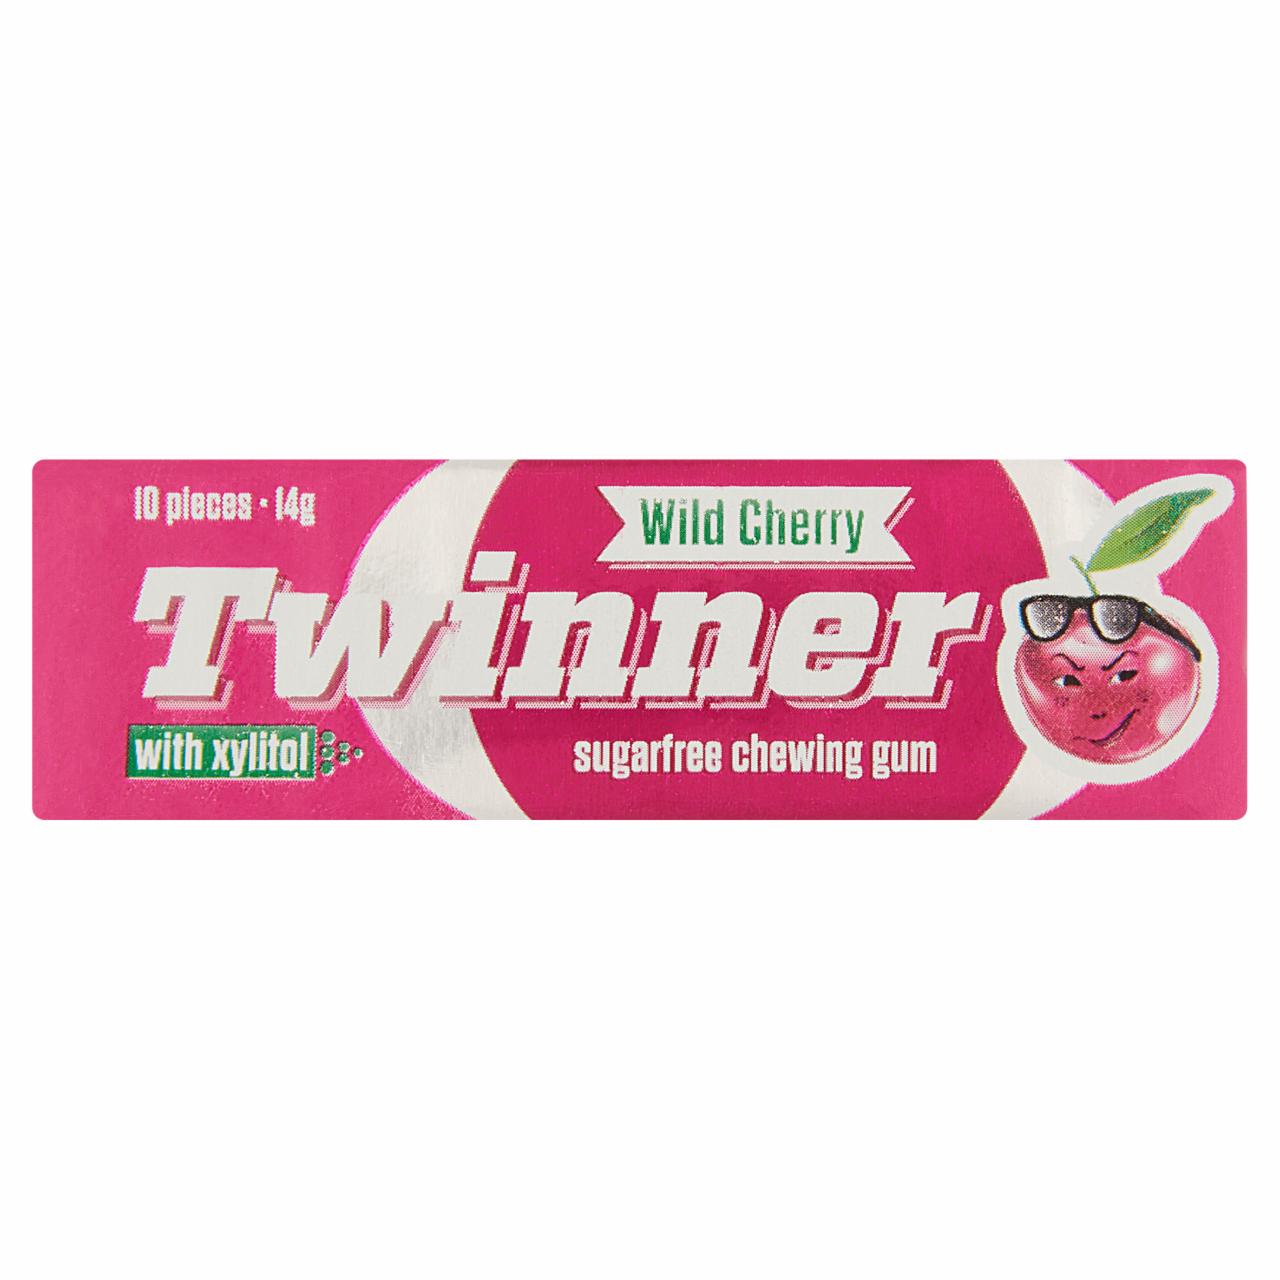 Képek - Twinner Wild Cherry cseresznye ízesítésű cukormentes rágógumi édesítőszerekkel 14 g